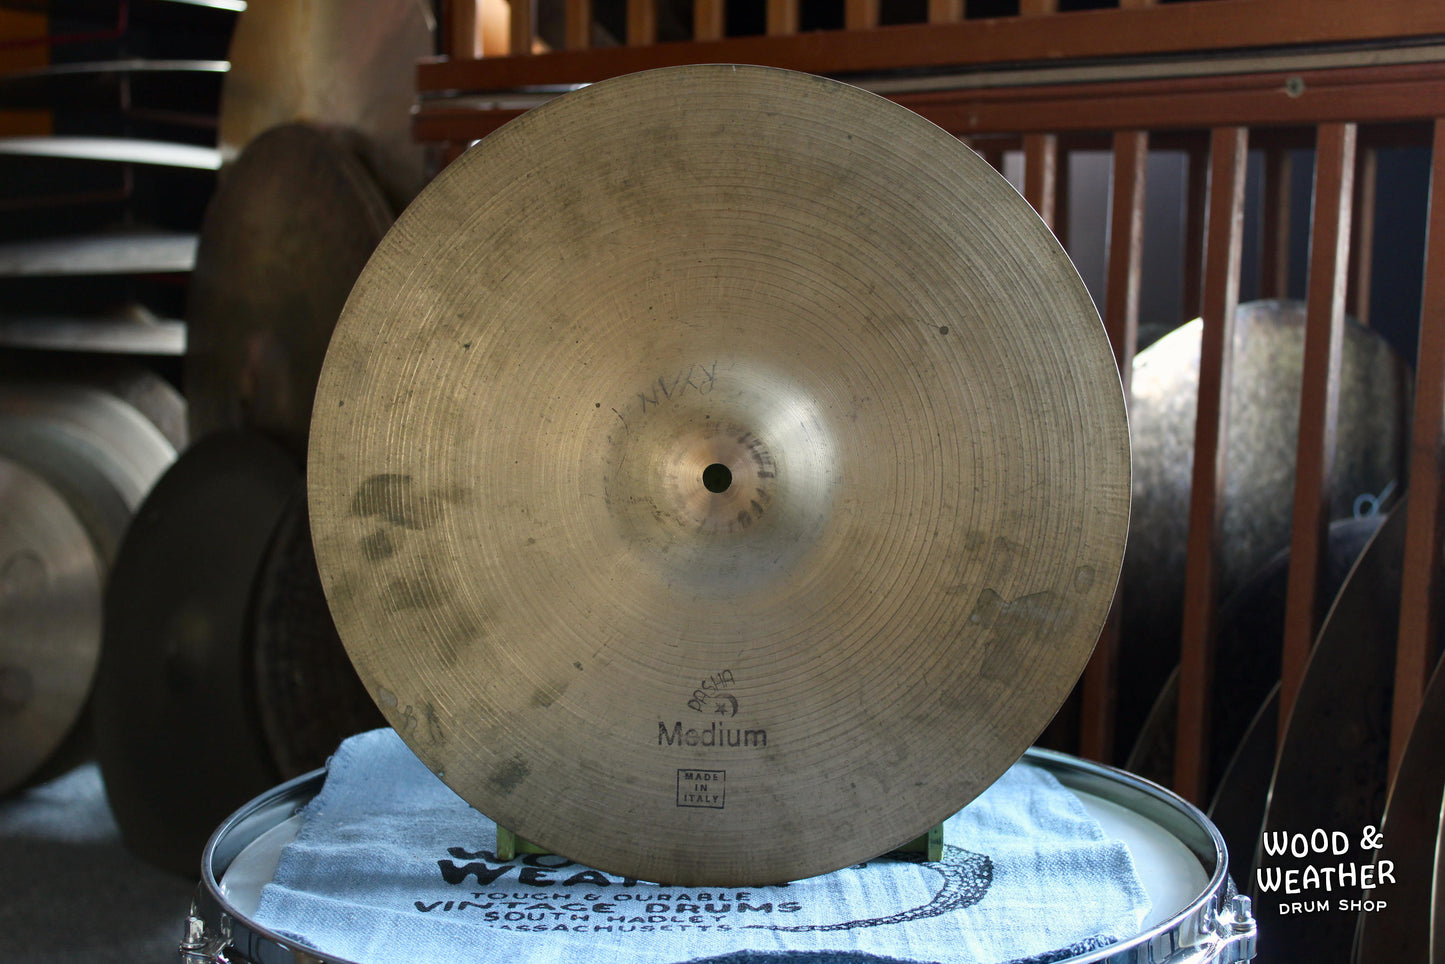 1950s Pasha 13" "Medium" Hi-Hat Cymbals 600/605g